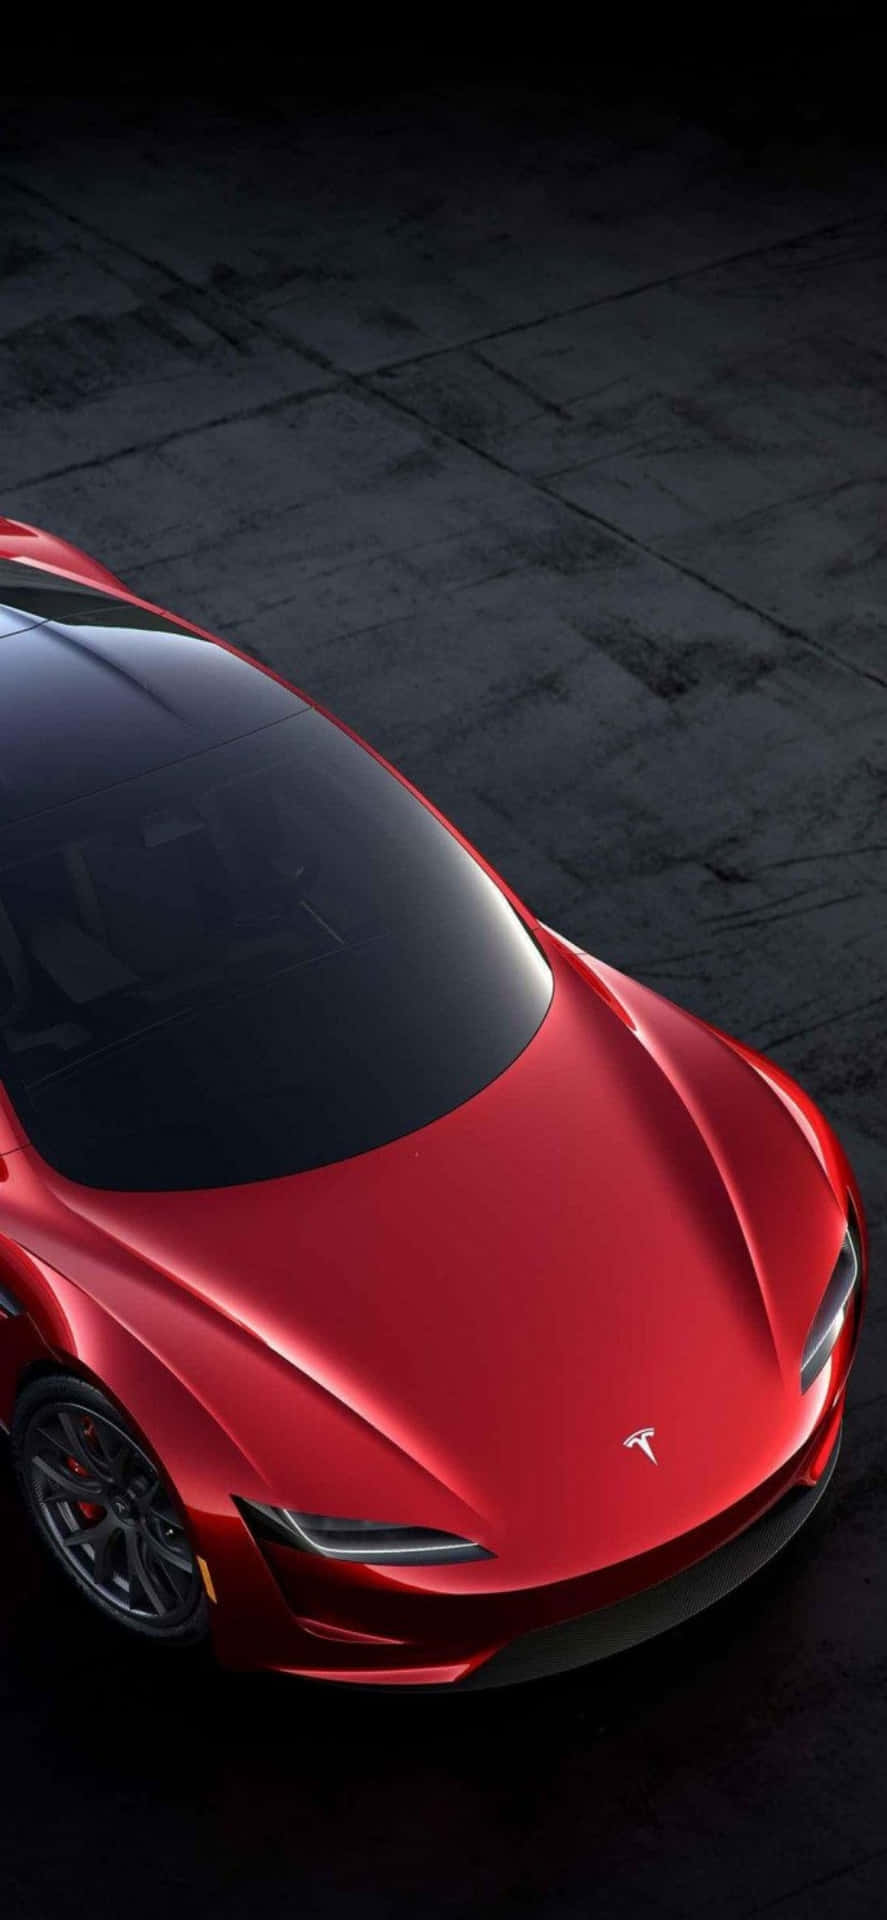 Superandoi Loro Concorrenti, La Tesla Model 3 È Un Leader In Termini Di Prestazioni E Innovazione.